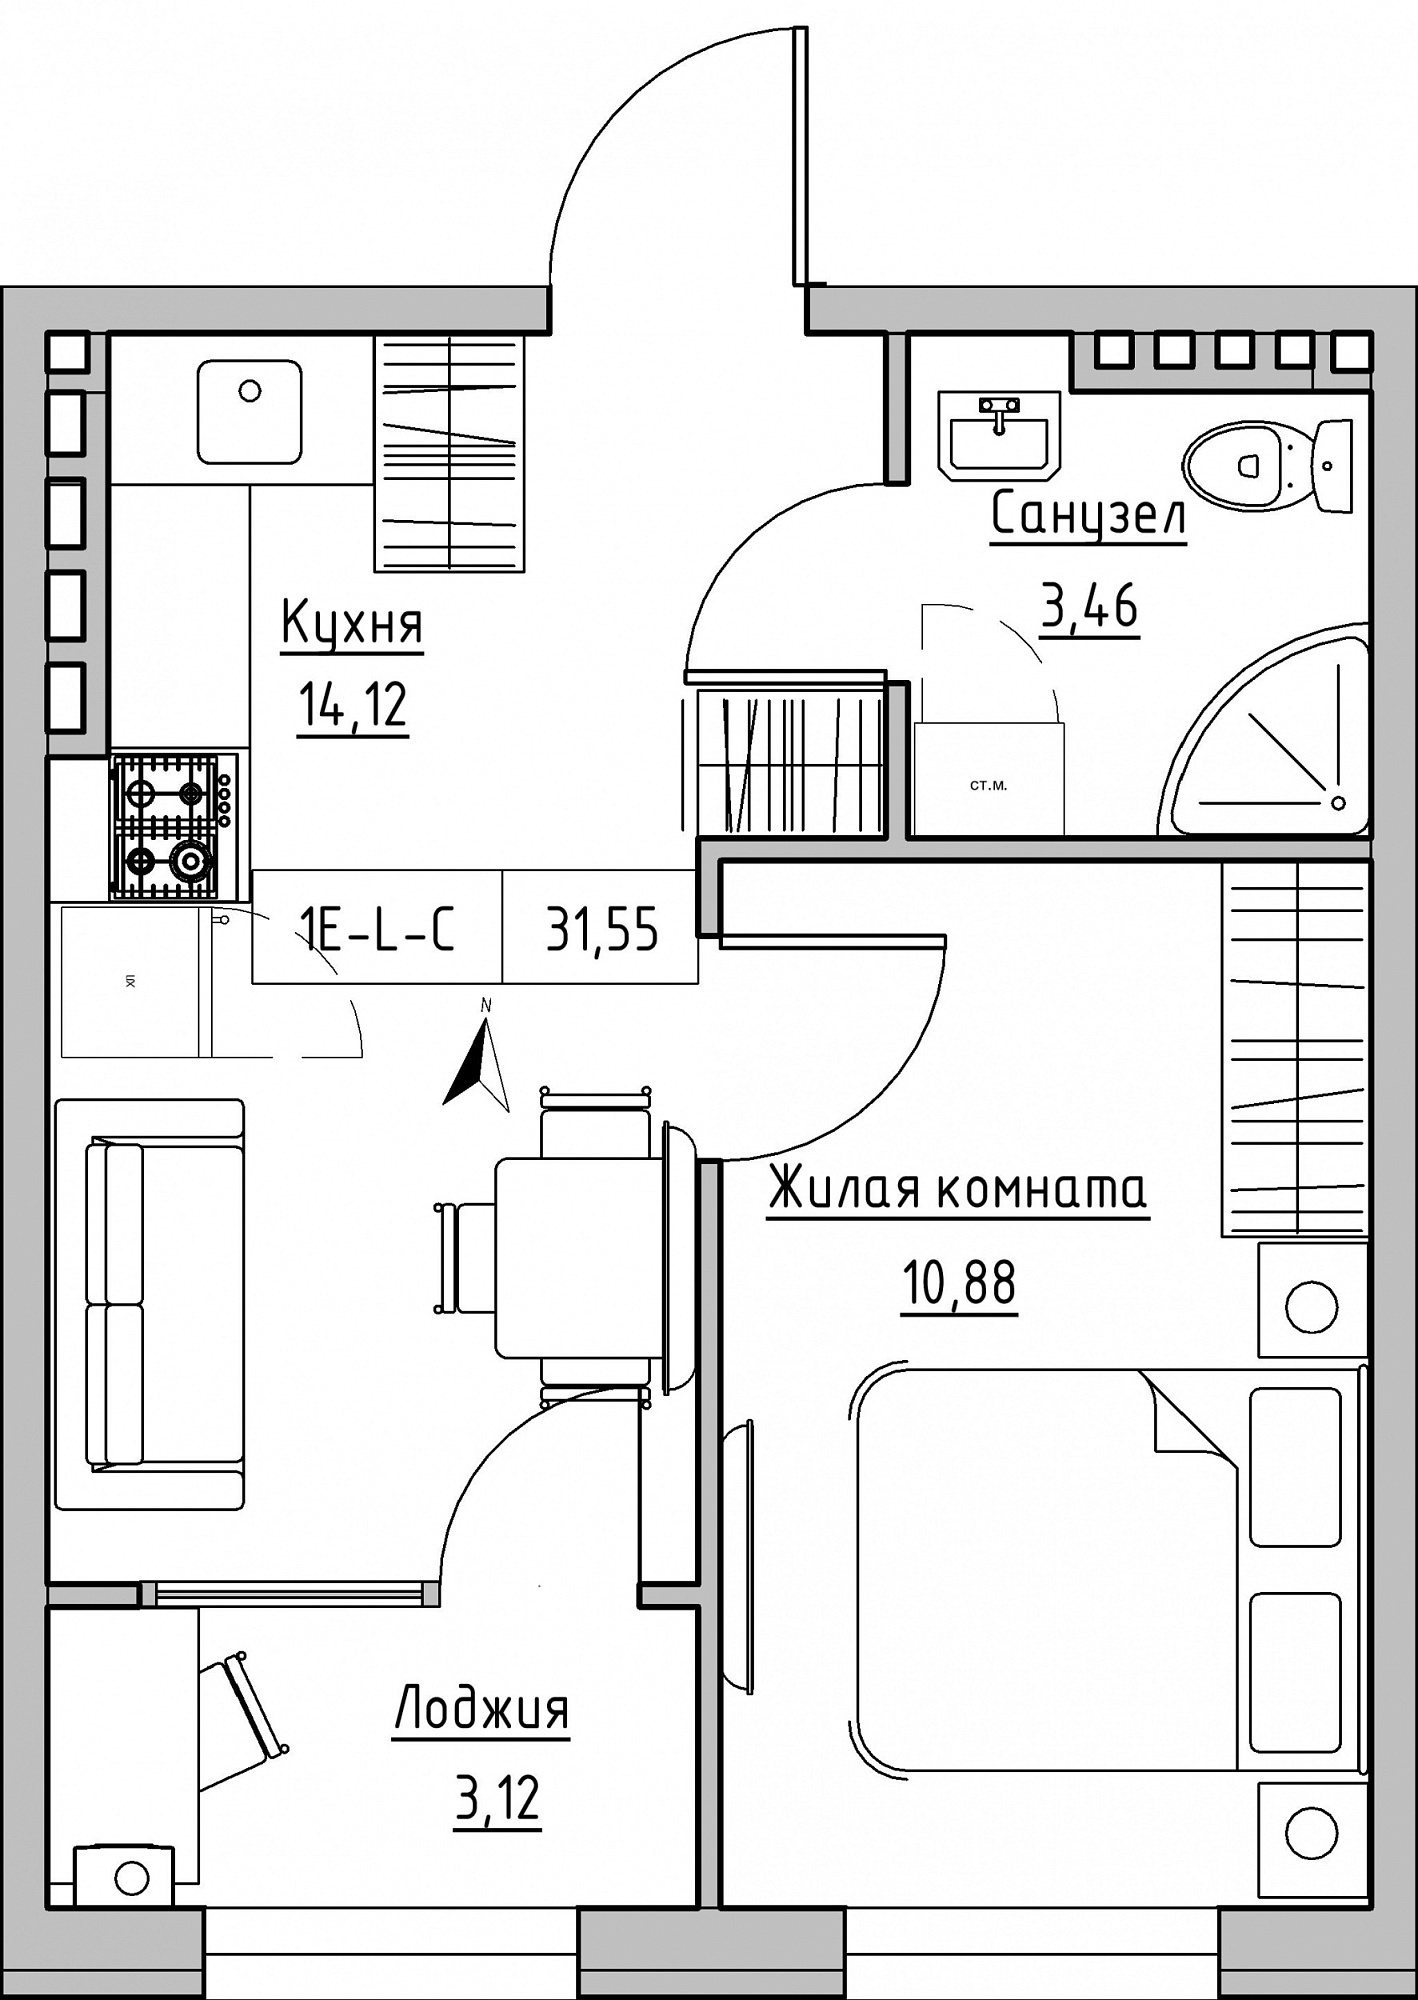 Планування 1-к квартира площею 31.55м2, KS-024-04/0007.